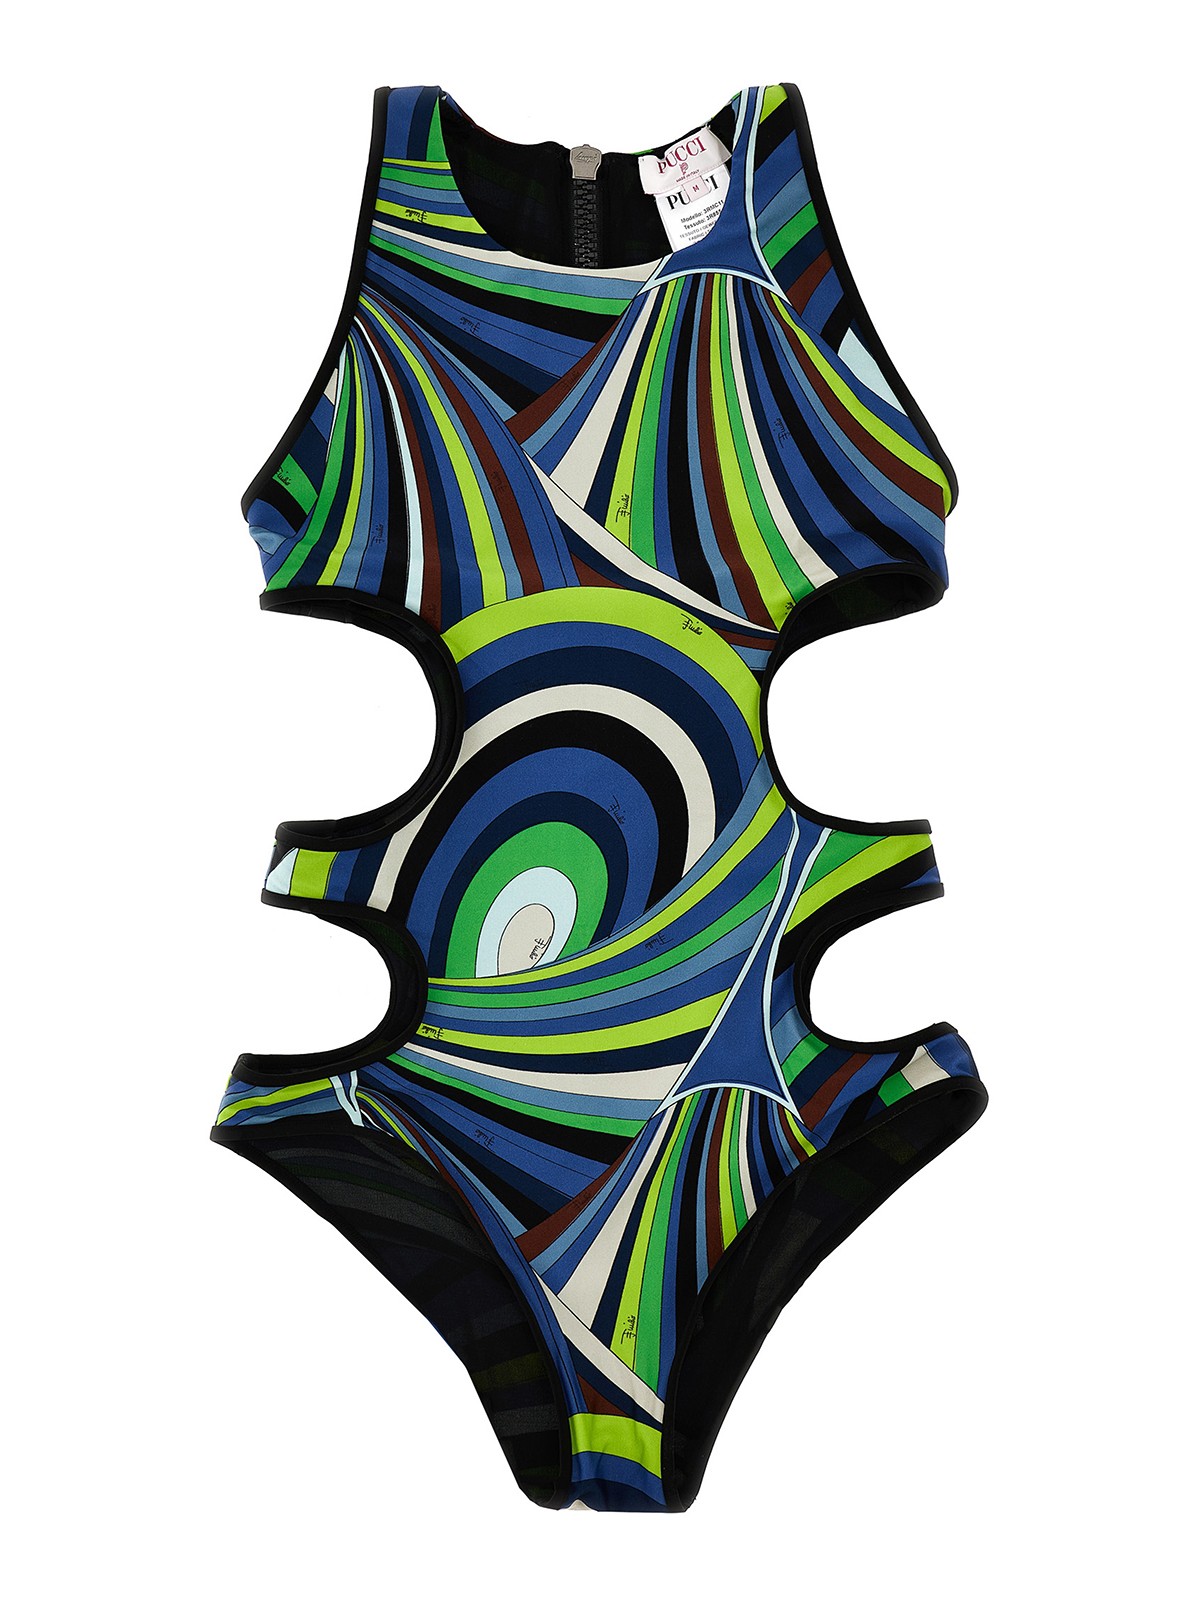 Cut-out details pattern swimsuit